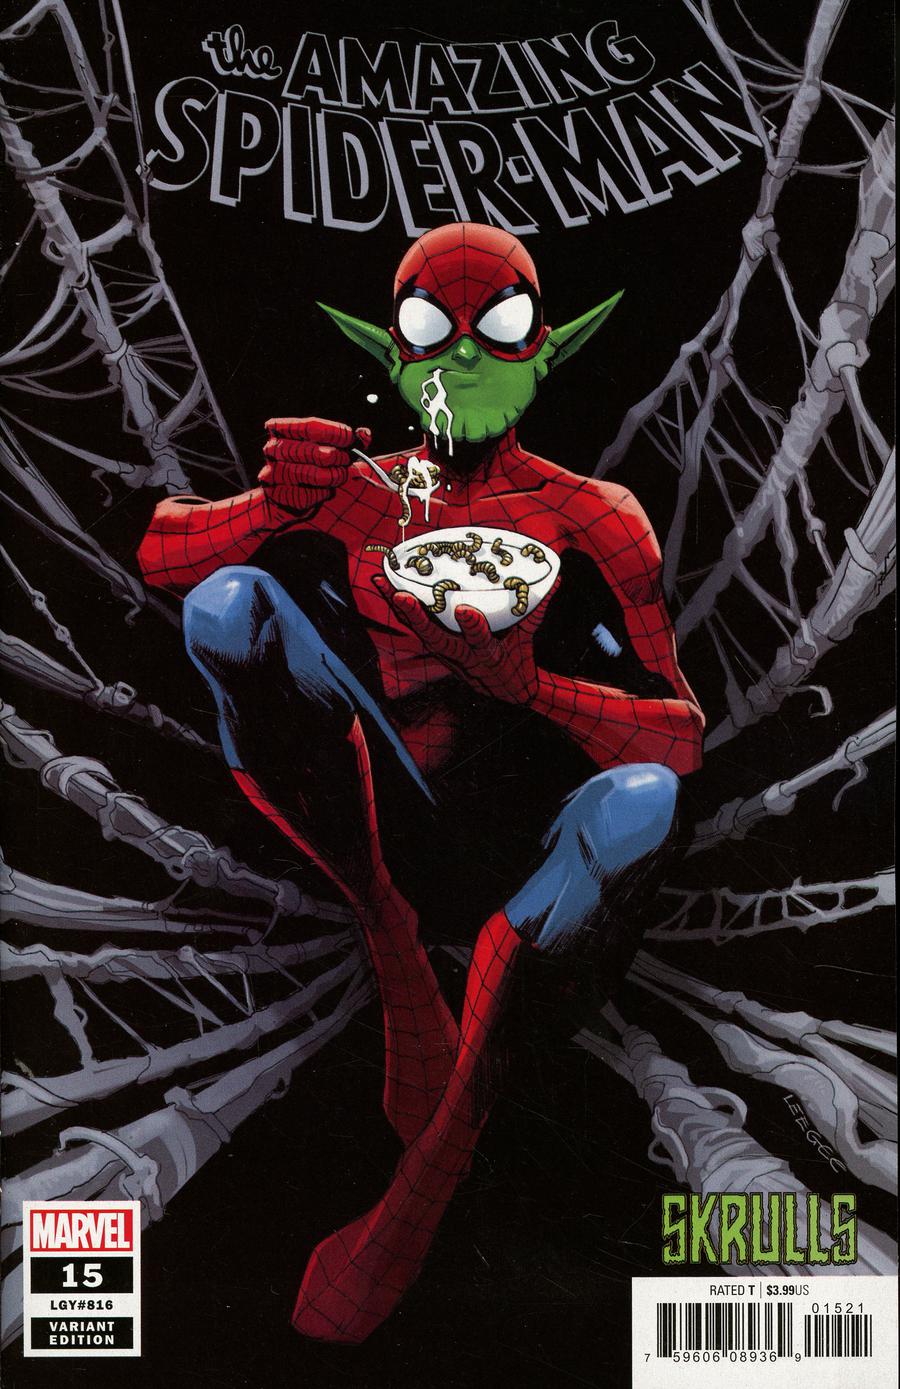 Amazing Spider-Man Vol 5 #15 Cover B Variant Lee Garbett Skrulls Cover